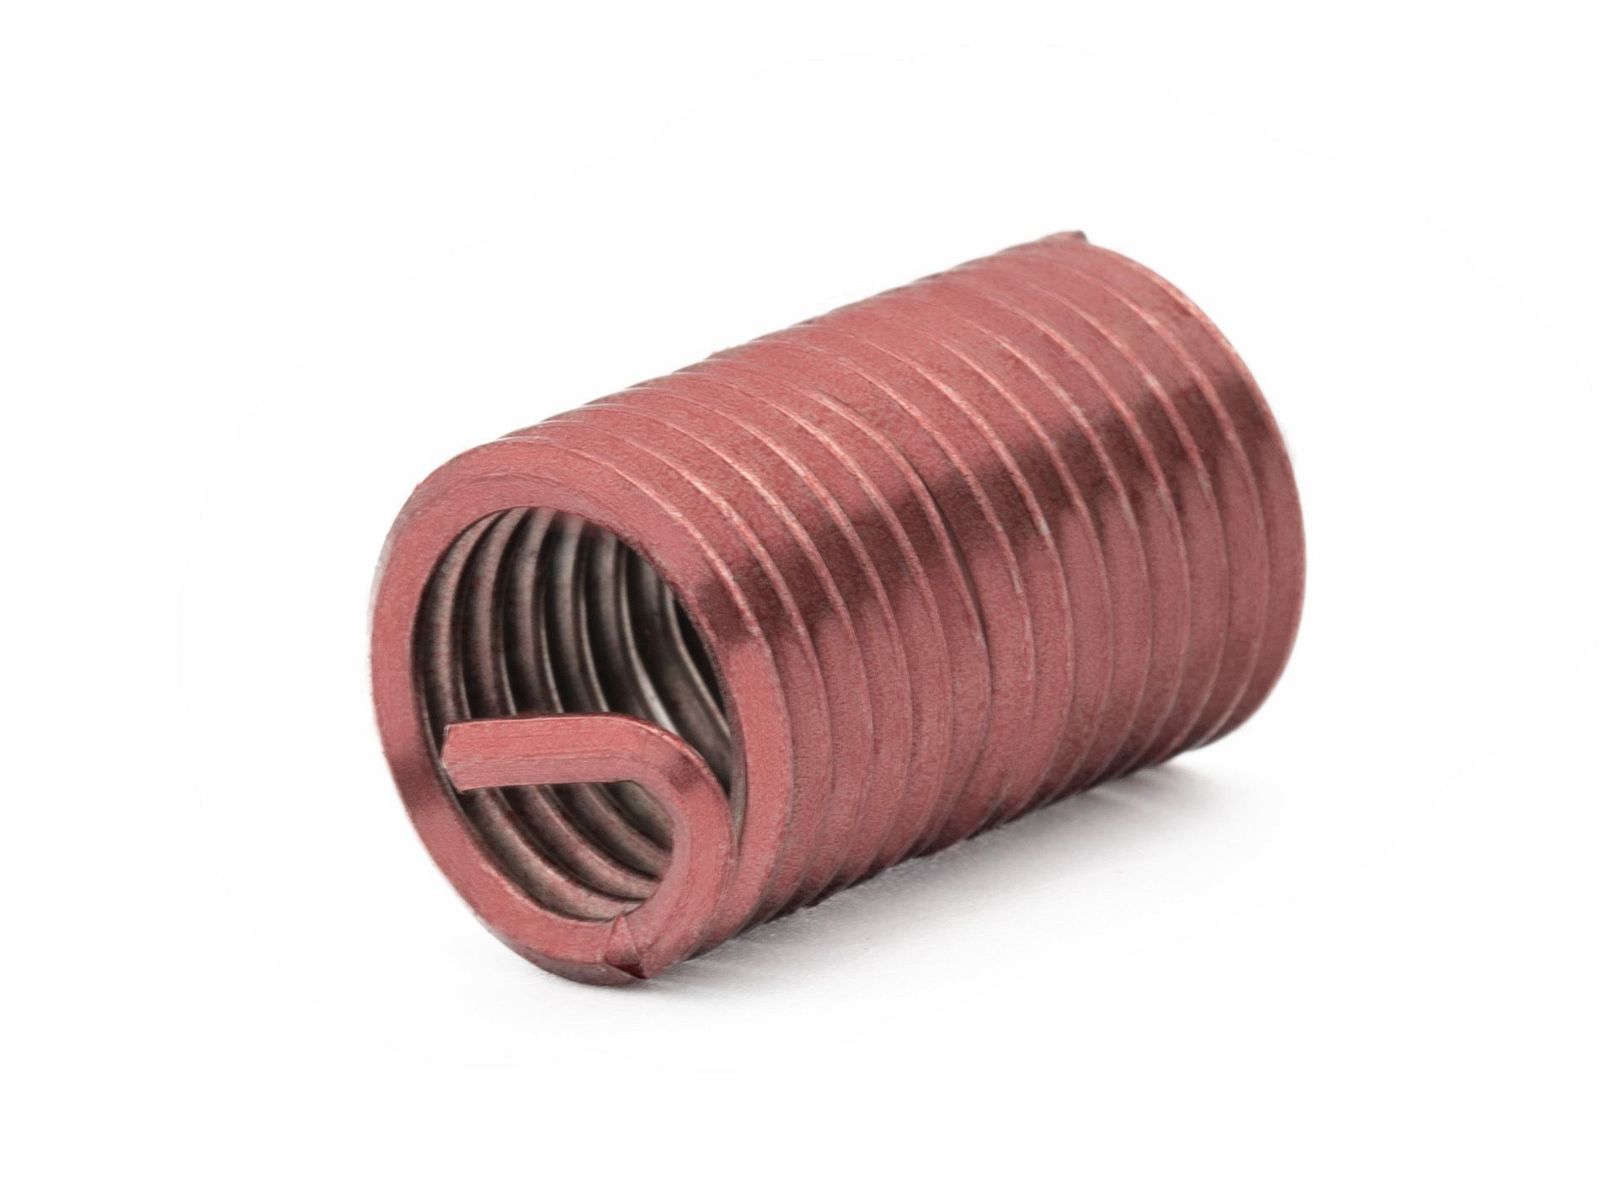 BaerCoil Wire Thread Inserts M 6 x 1.0 - 2.5 D (15 mm) - screw grip (screw locking) - 10 pcs.